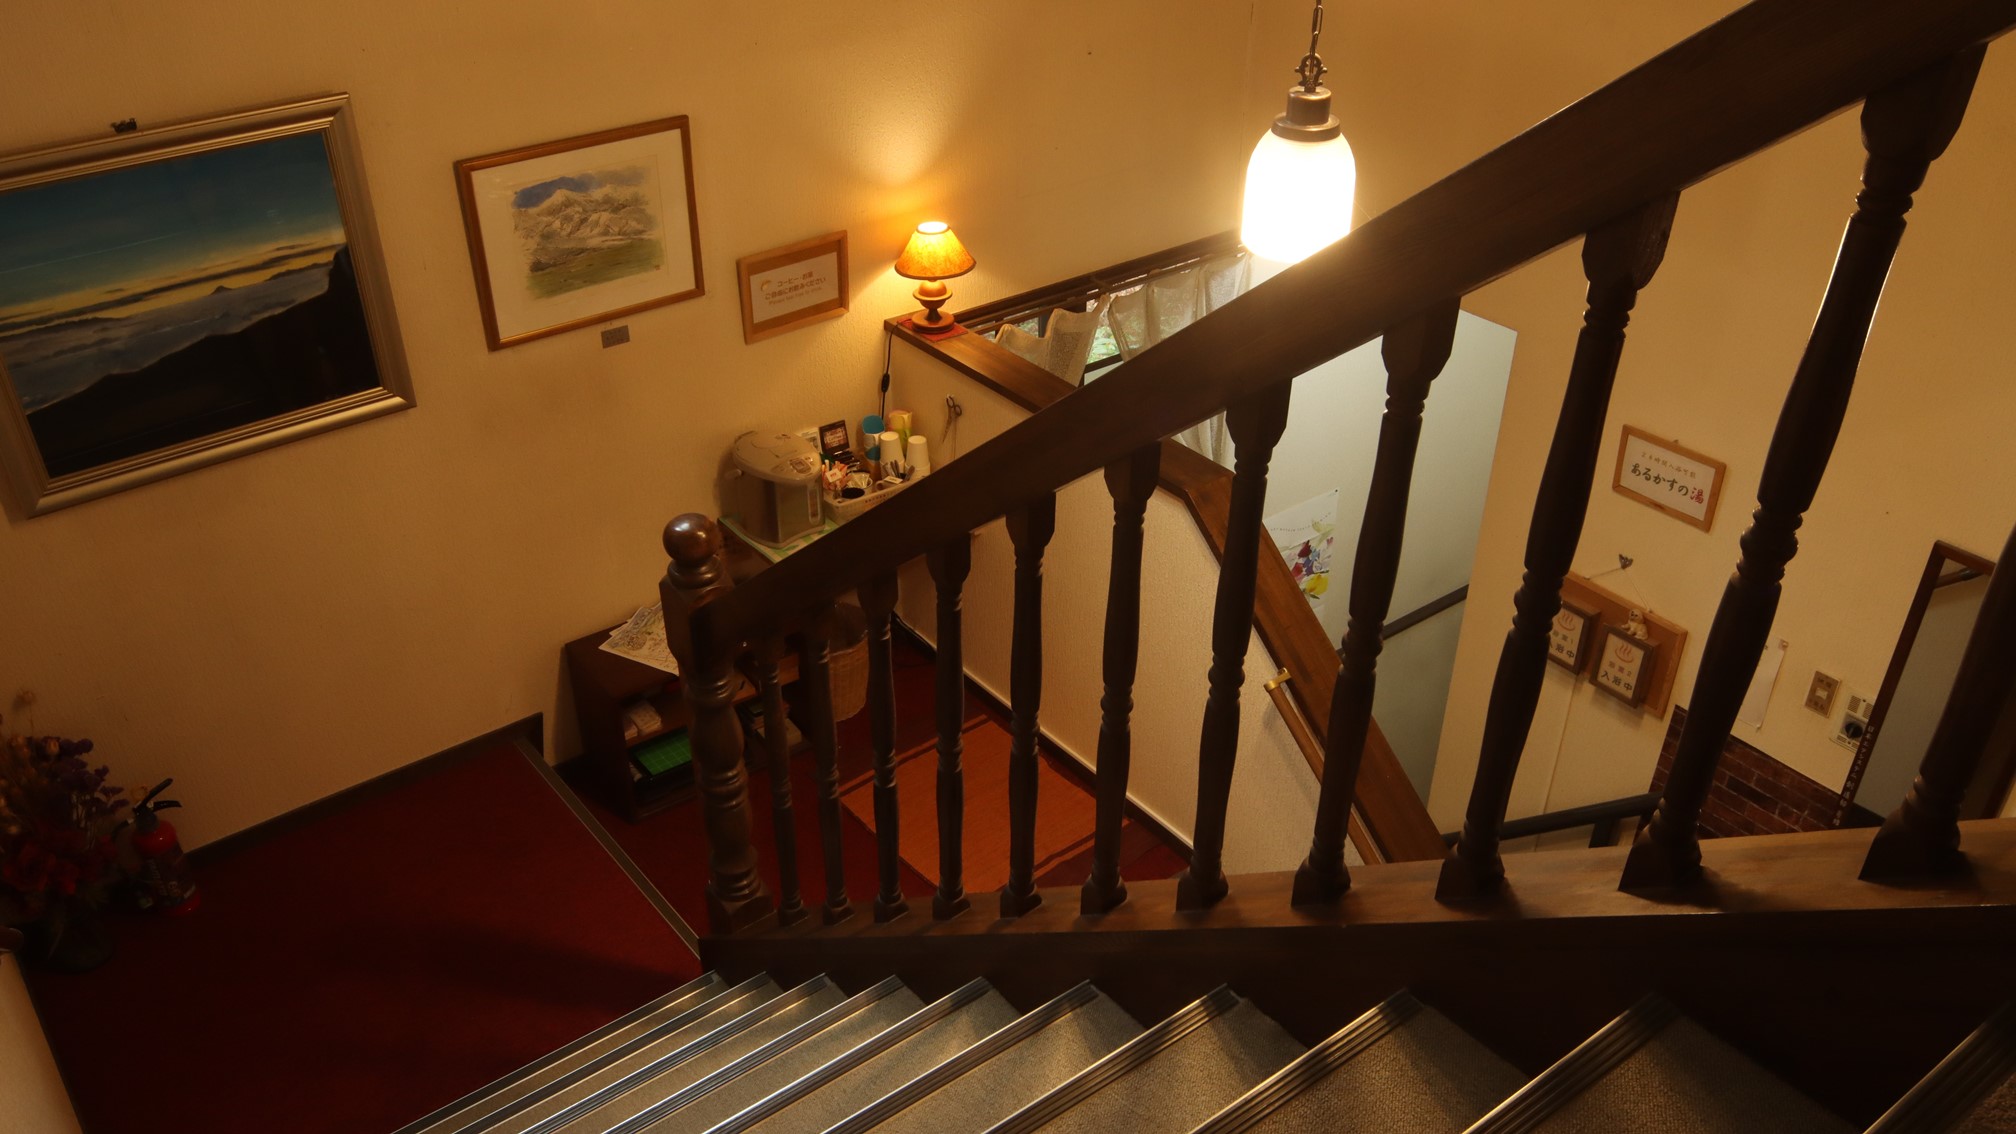 □【館内の様子】客室までの階段の様子